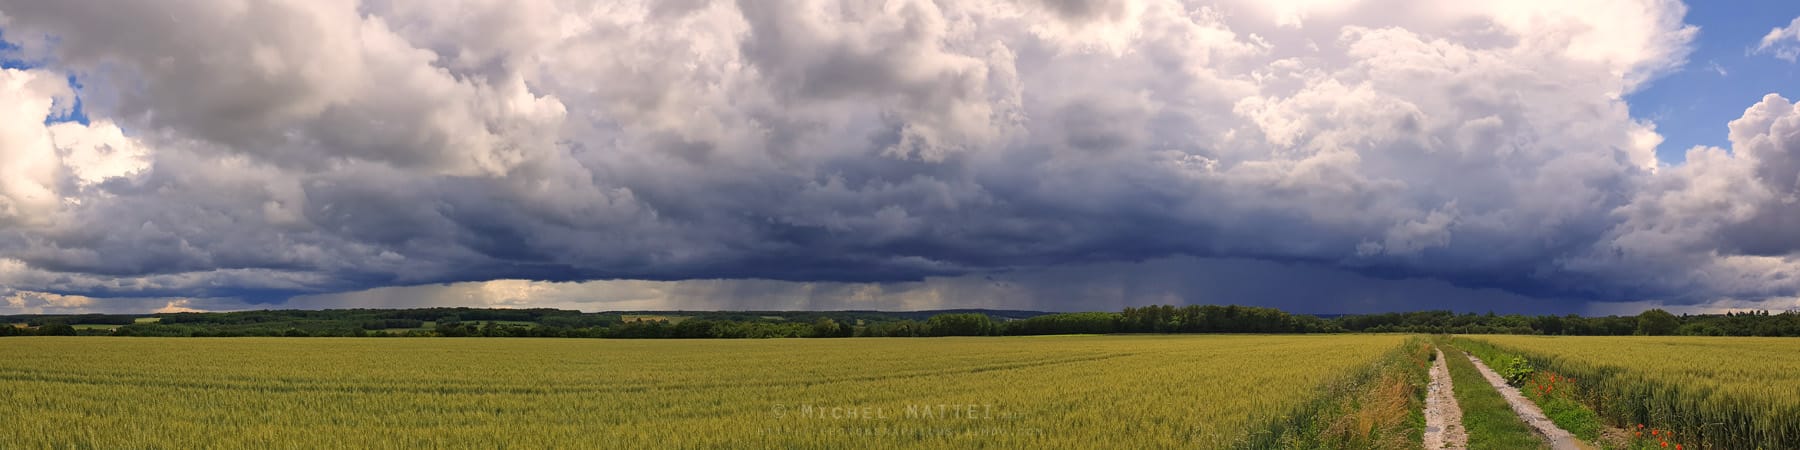 Une ligne de grain orageuse aborde la touraine par le sud ce mardi11 juin - 11/06/2019 17:45 - Michel Mattei